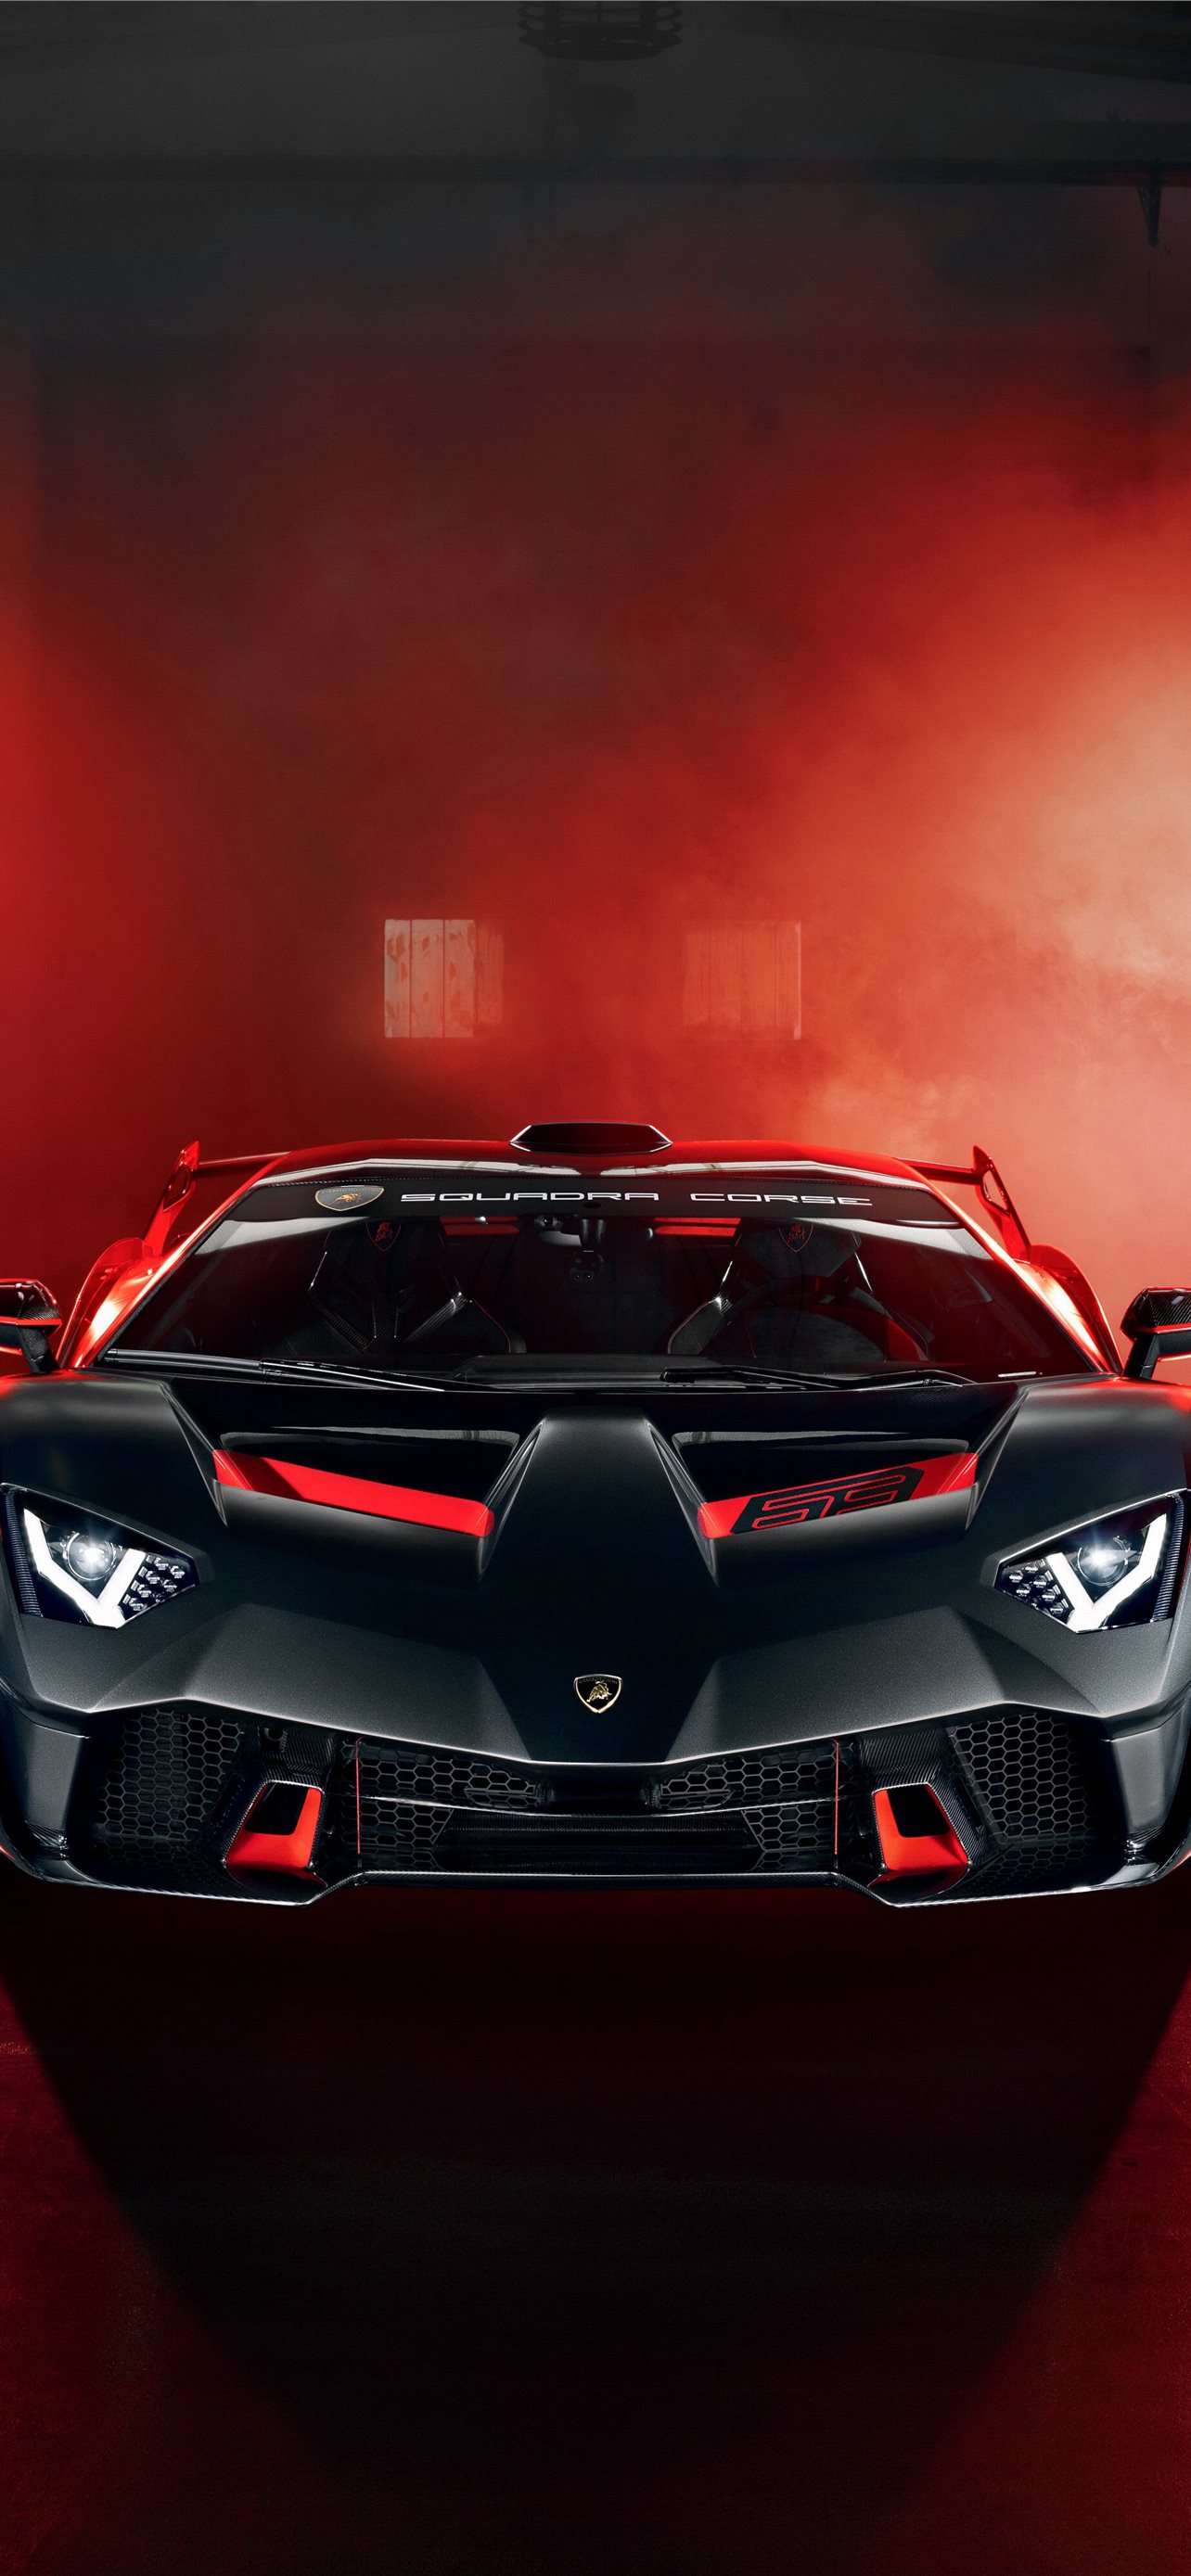 Hình nền Lamborghini là một trong những lựa chọn đáng để xem và sử dụng. Với những hình ảnh chất lượng cao về siêu xe Lamborghini, bạn sẽ được thưởng thức một thế giới của những chiếc xe đắt giá và thiết kế cực kỳ sắc sảo.